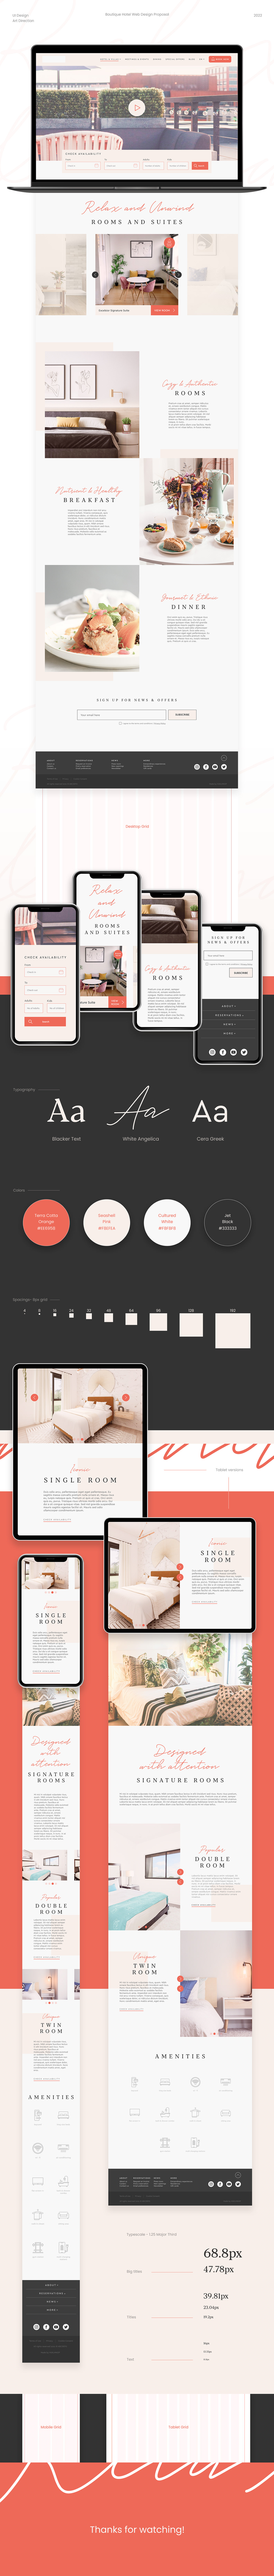 Figma graphic design  hotel web design UI ui design Web Design  UxUIdesign